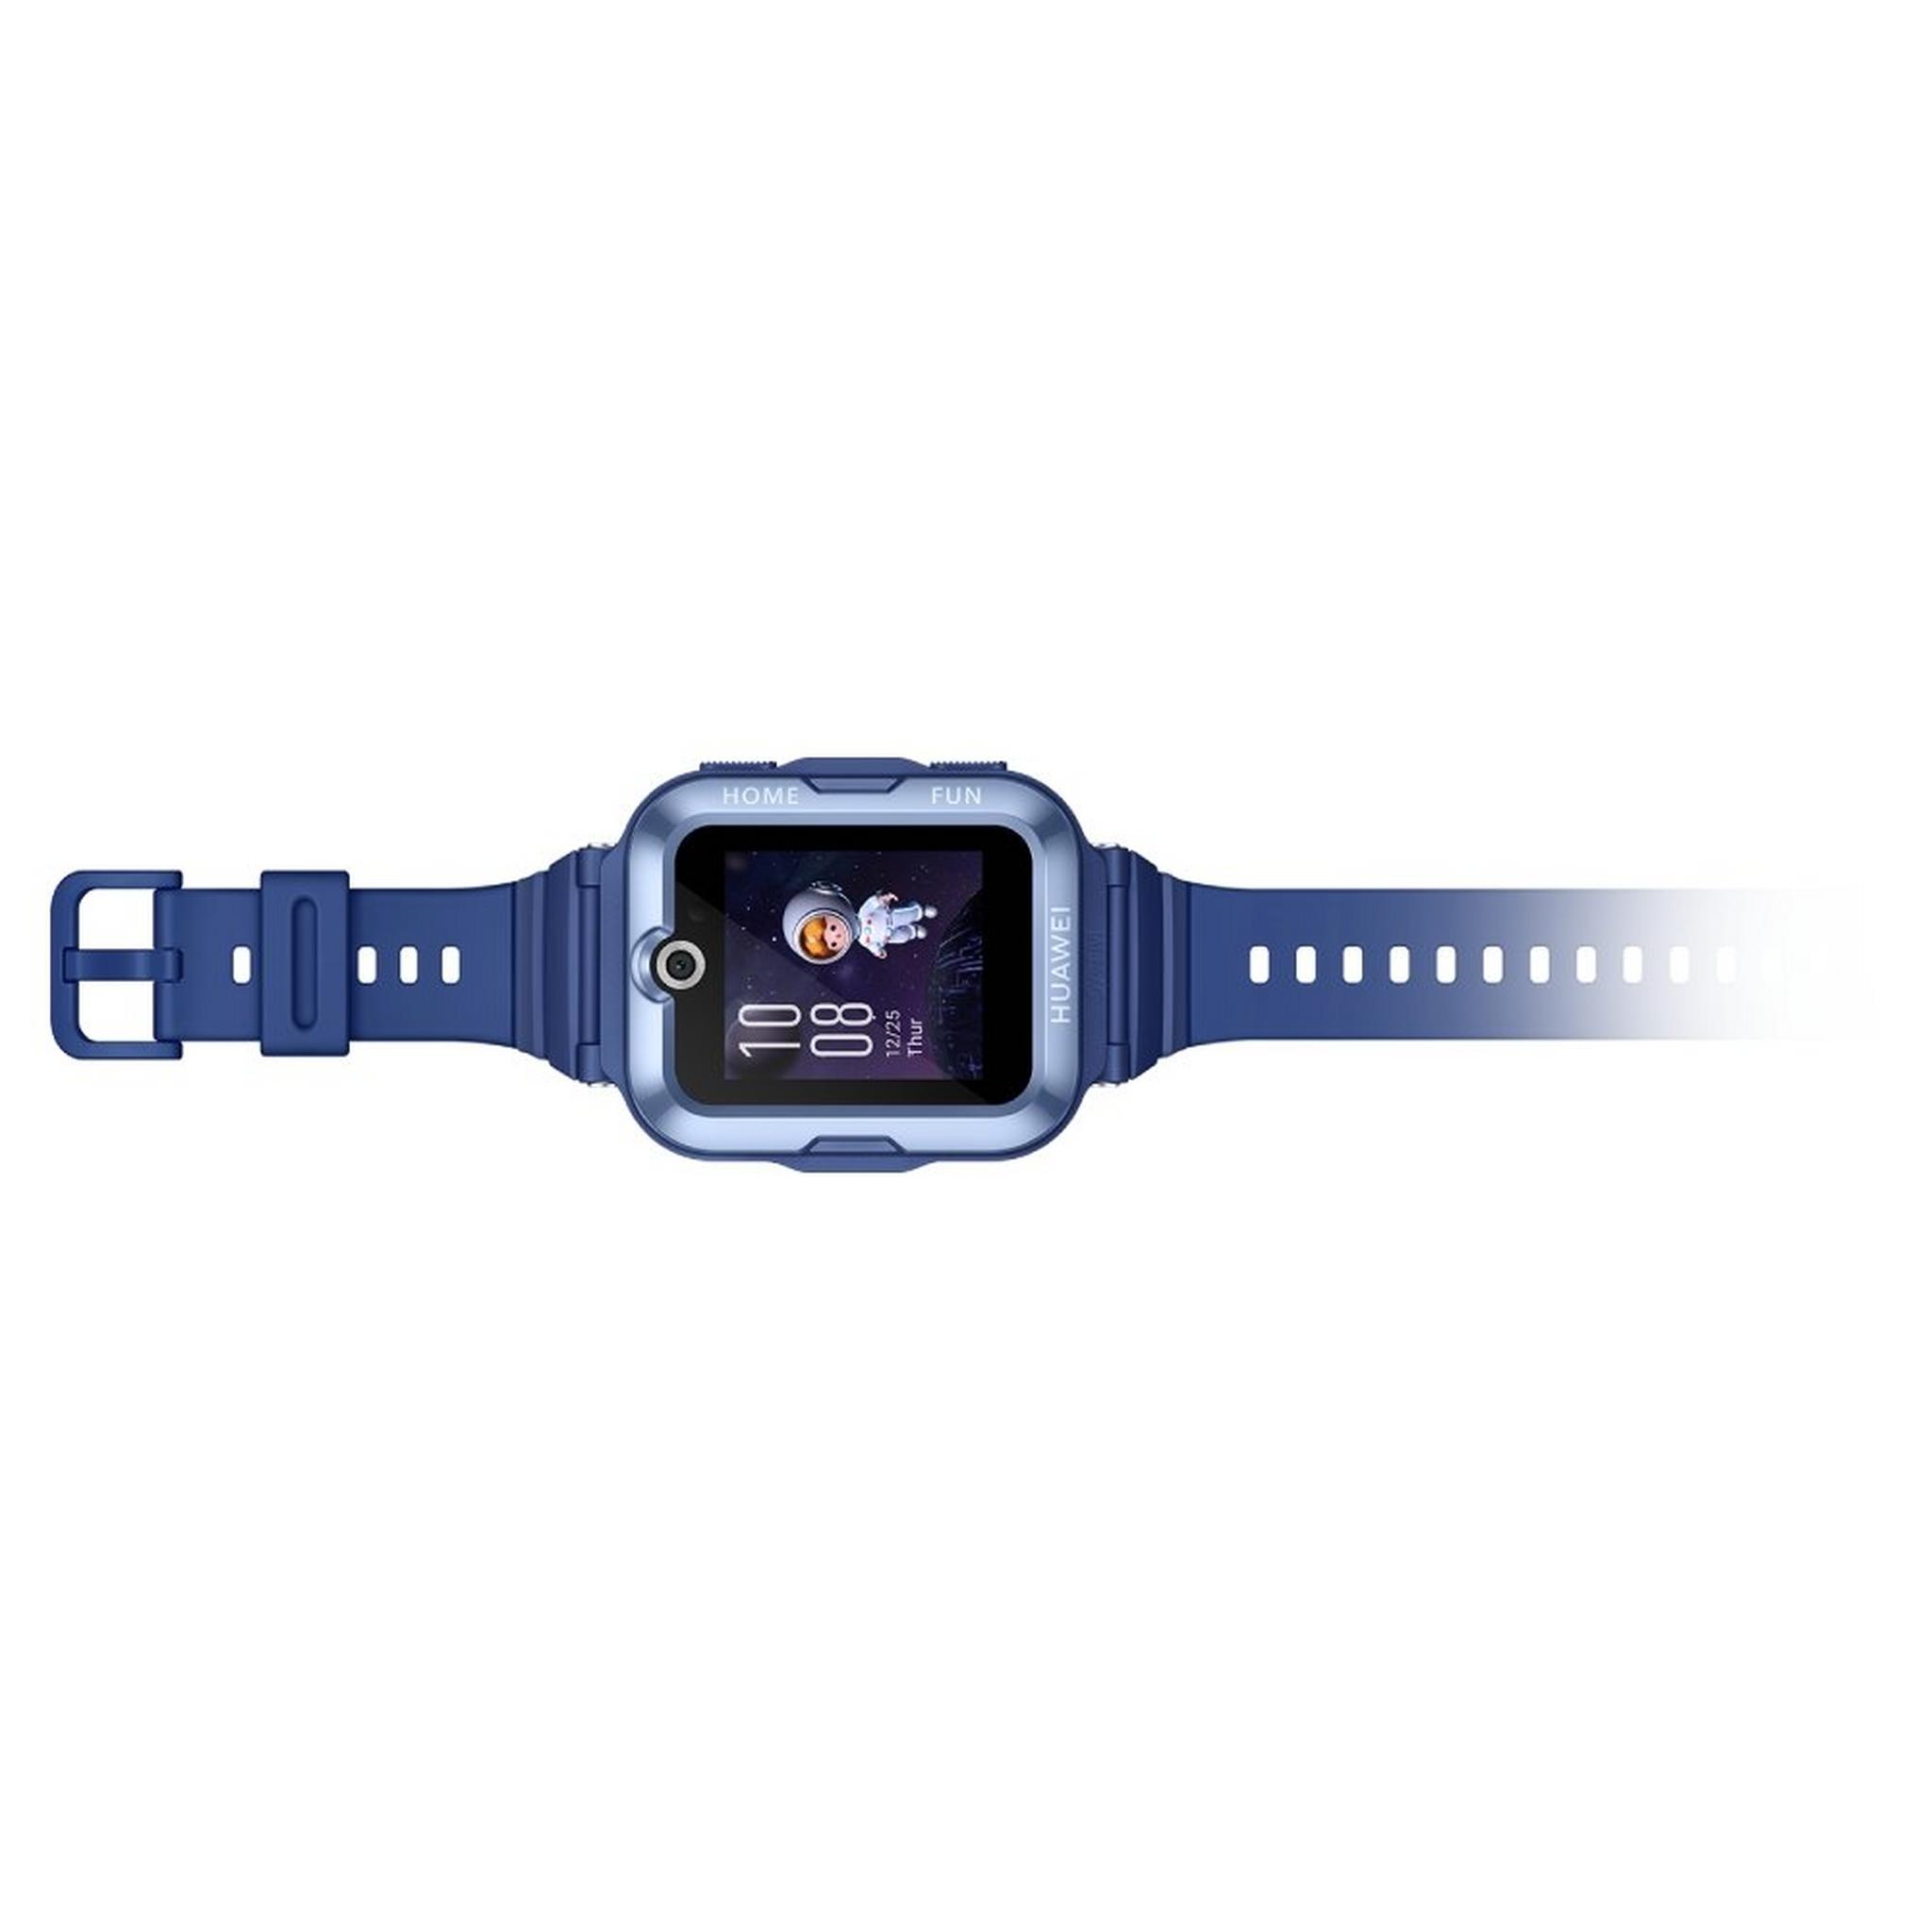 ساعة هواوي كيدز 4 برو، 52 ملم، هيكل من البلاستيك، حزام من السيليكون - أزرق